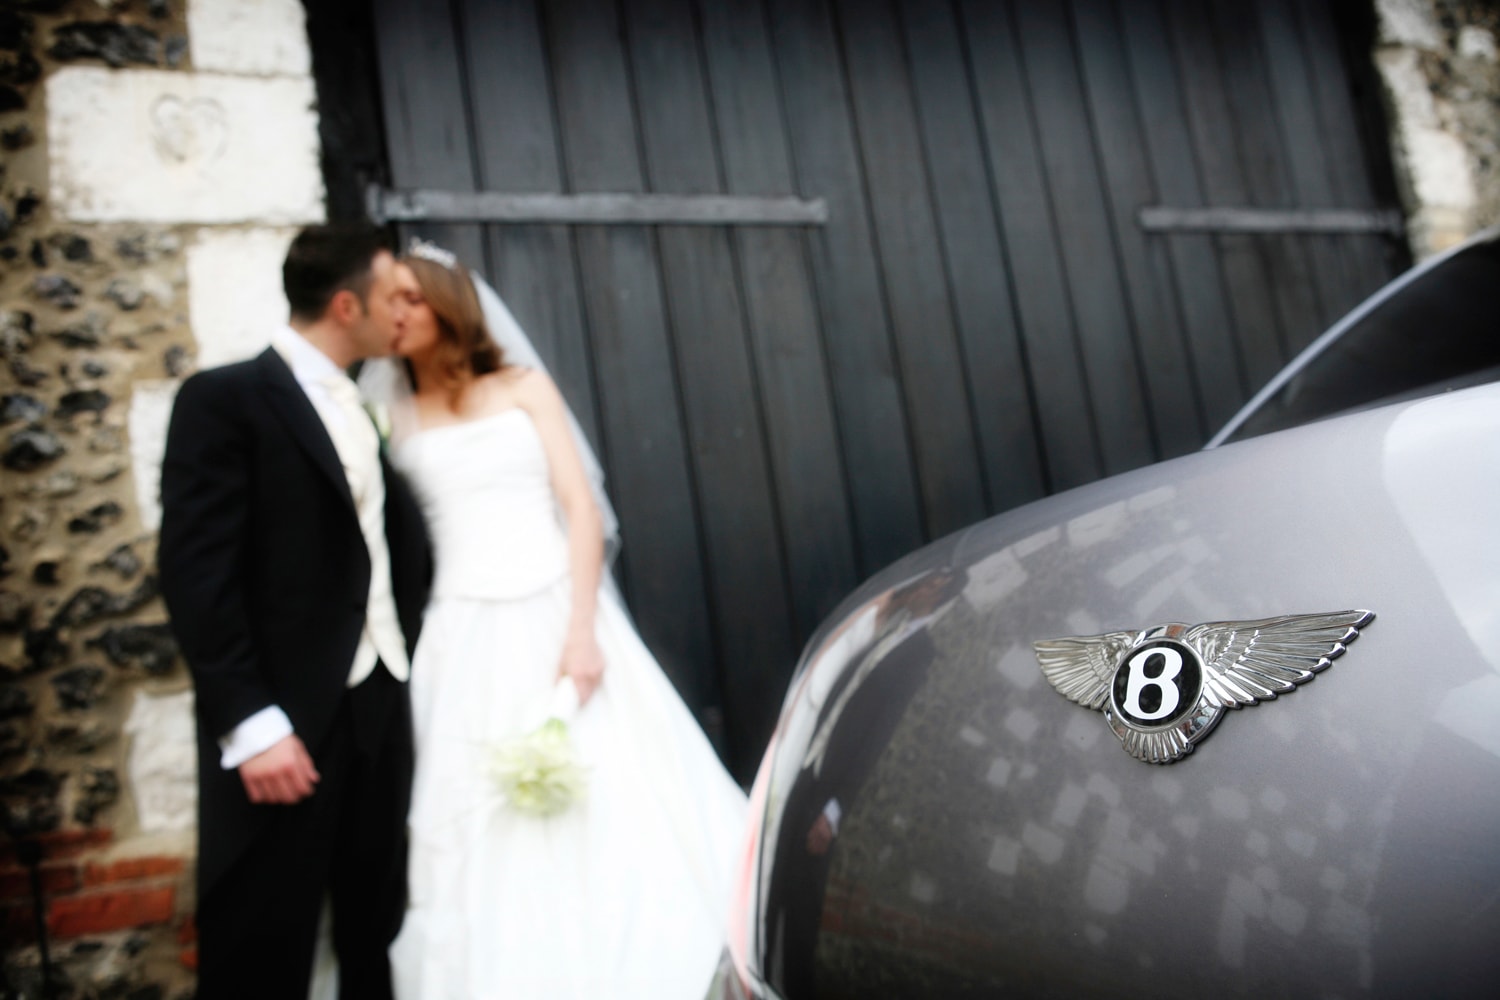 Bentley wedding kiss